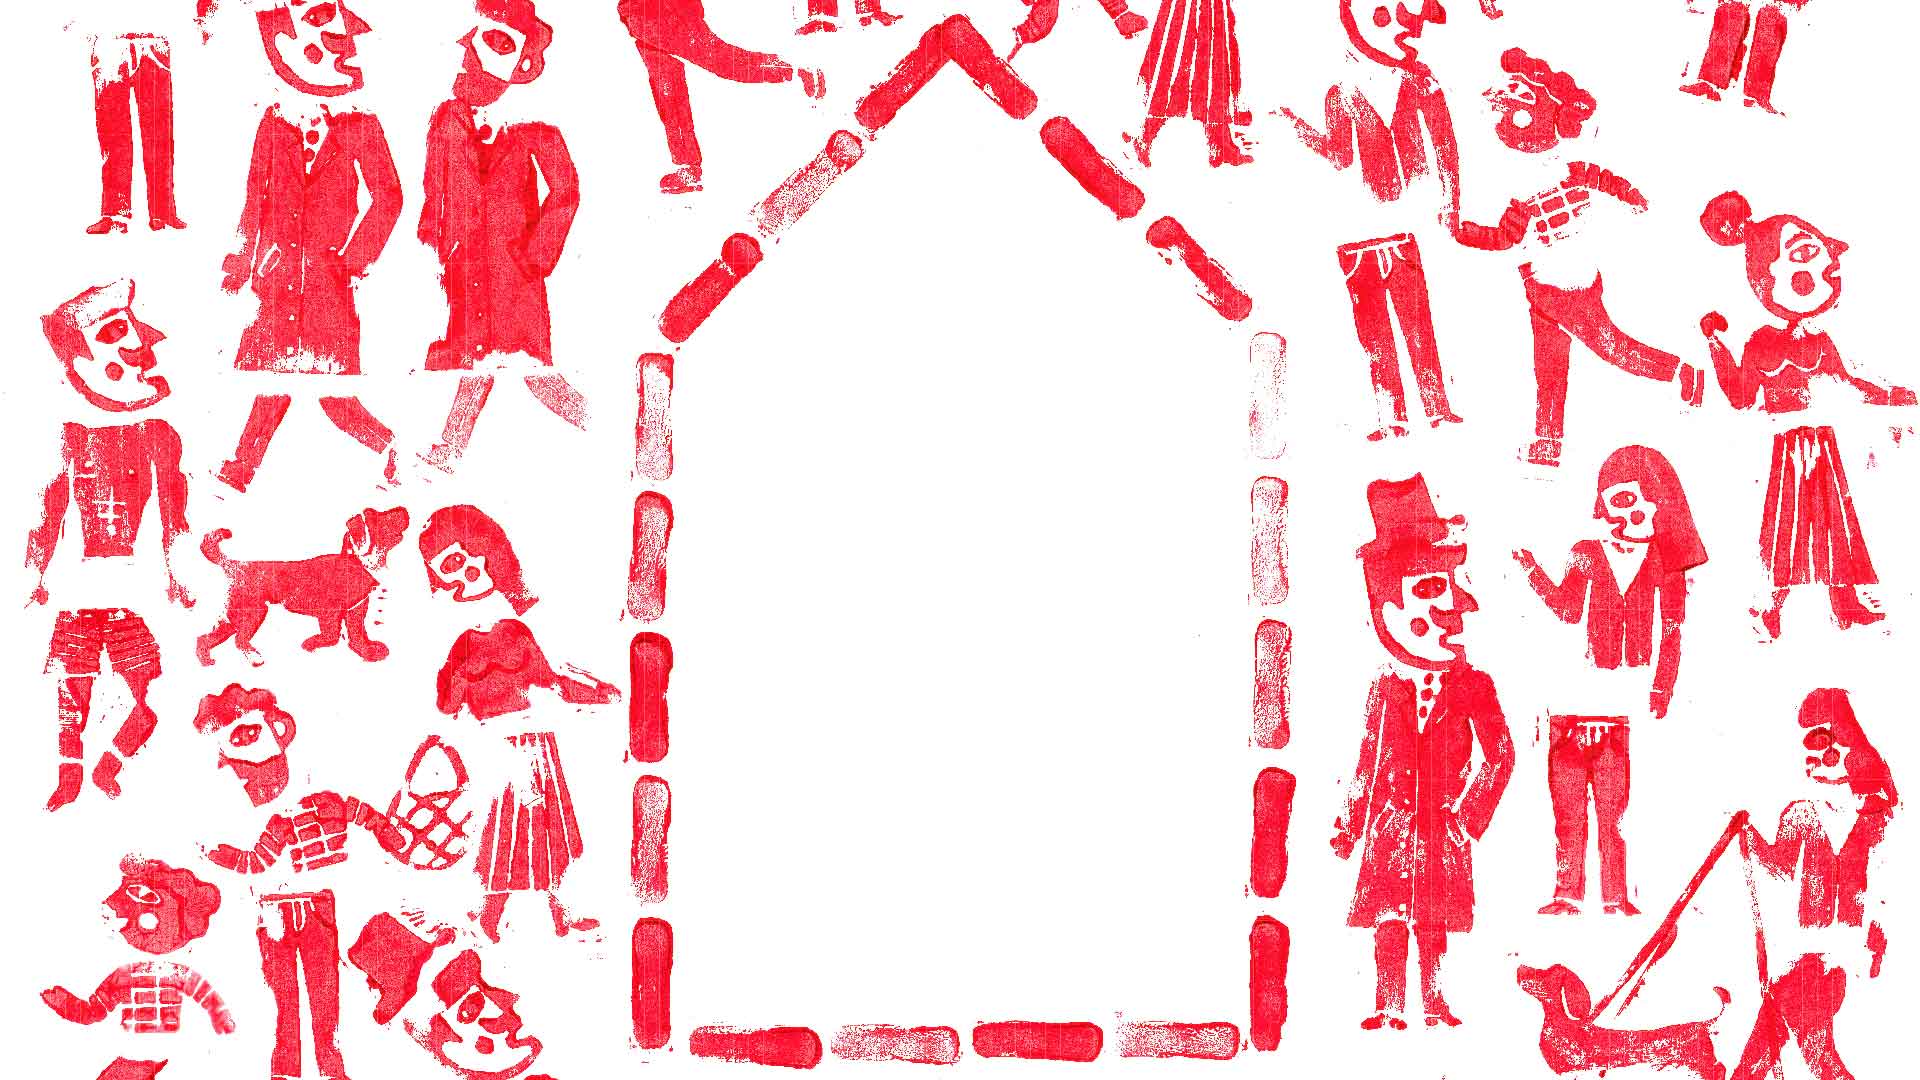 Grafika przedstawia czerwone sylwetki ludzi i zwierząt, którzy chodzą dookoła zarysu domu. Wszystko jest na białym tle.